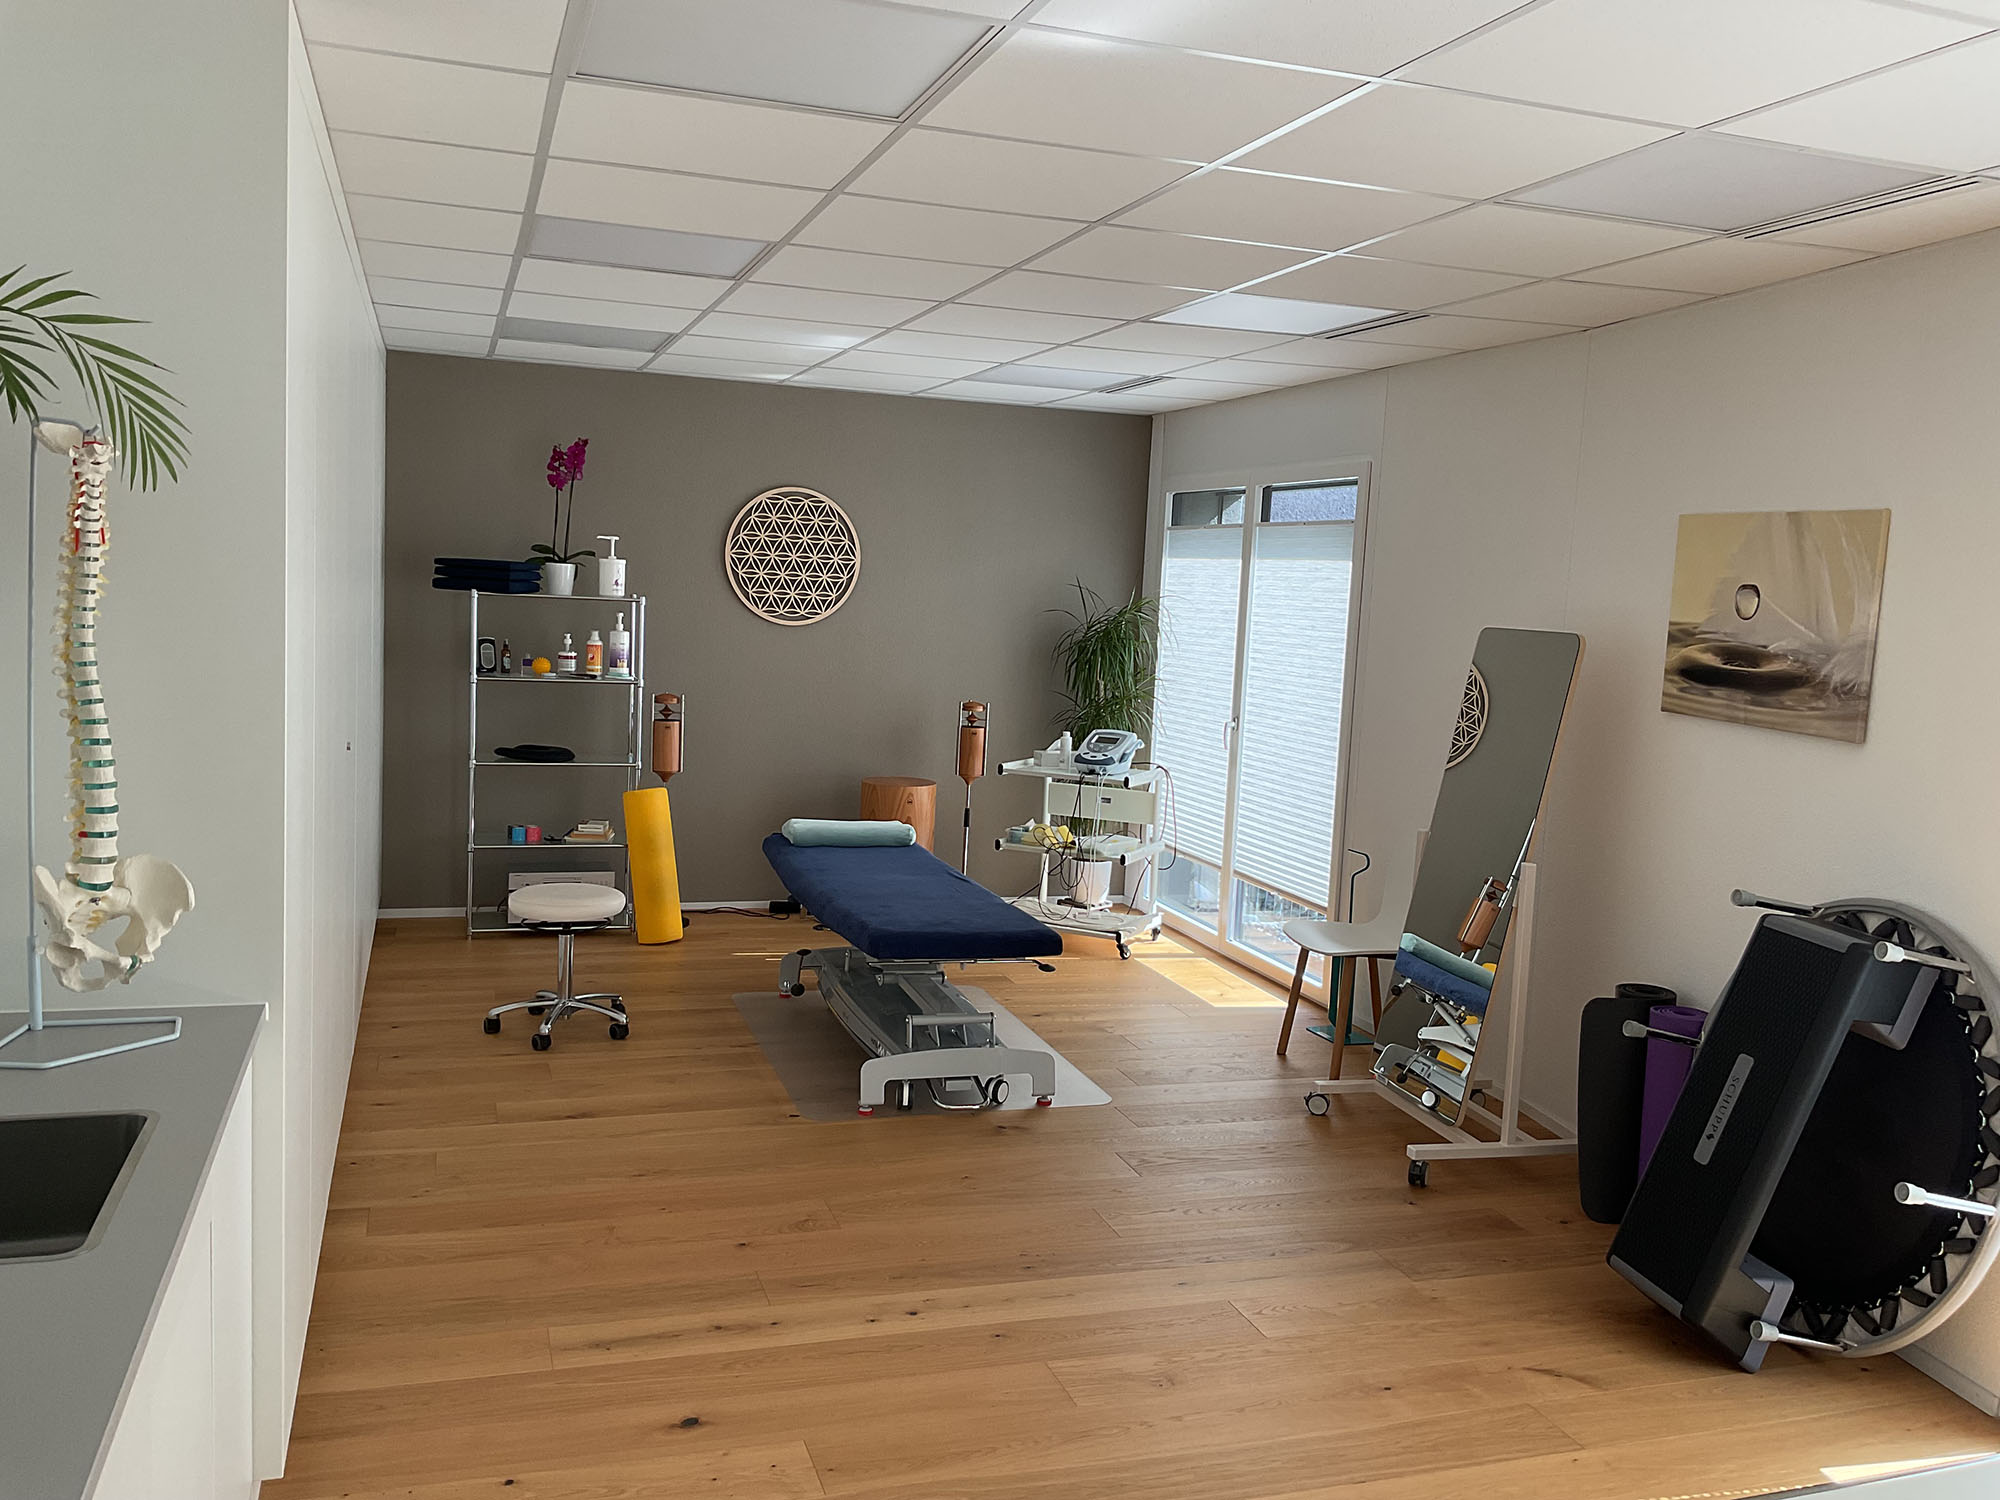 Ein Physiotherapie-Praxisraum mit Behandlungsliege und Trainingsgeräten.